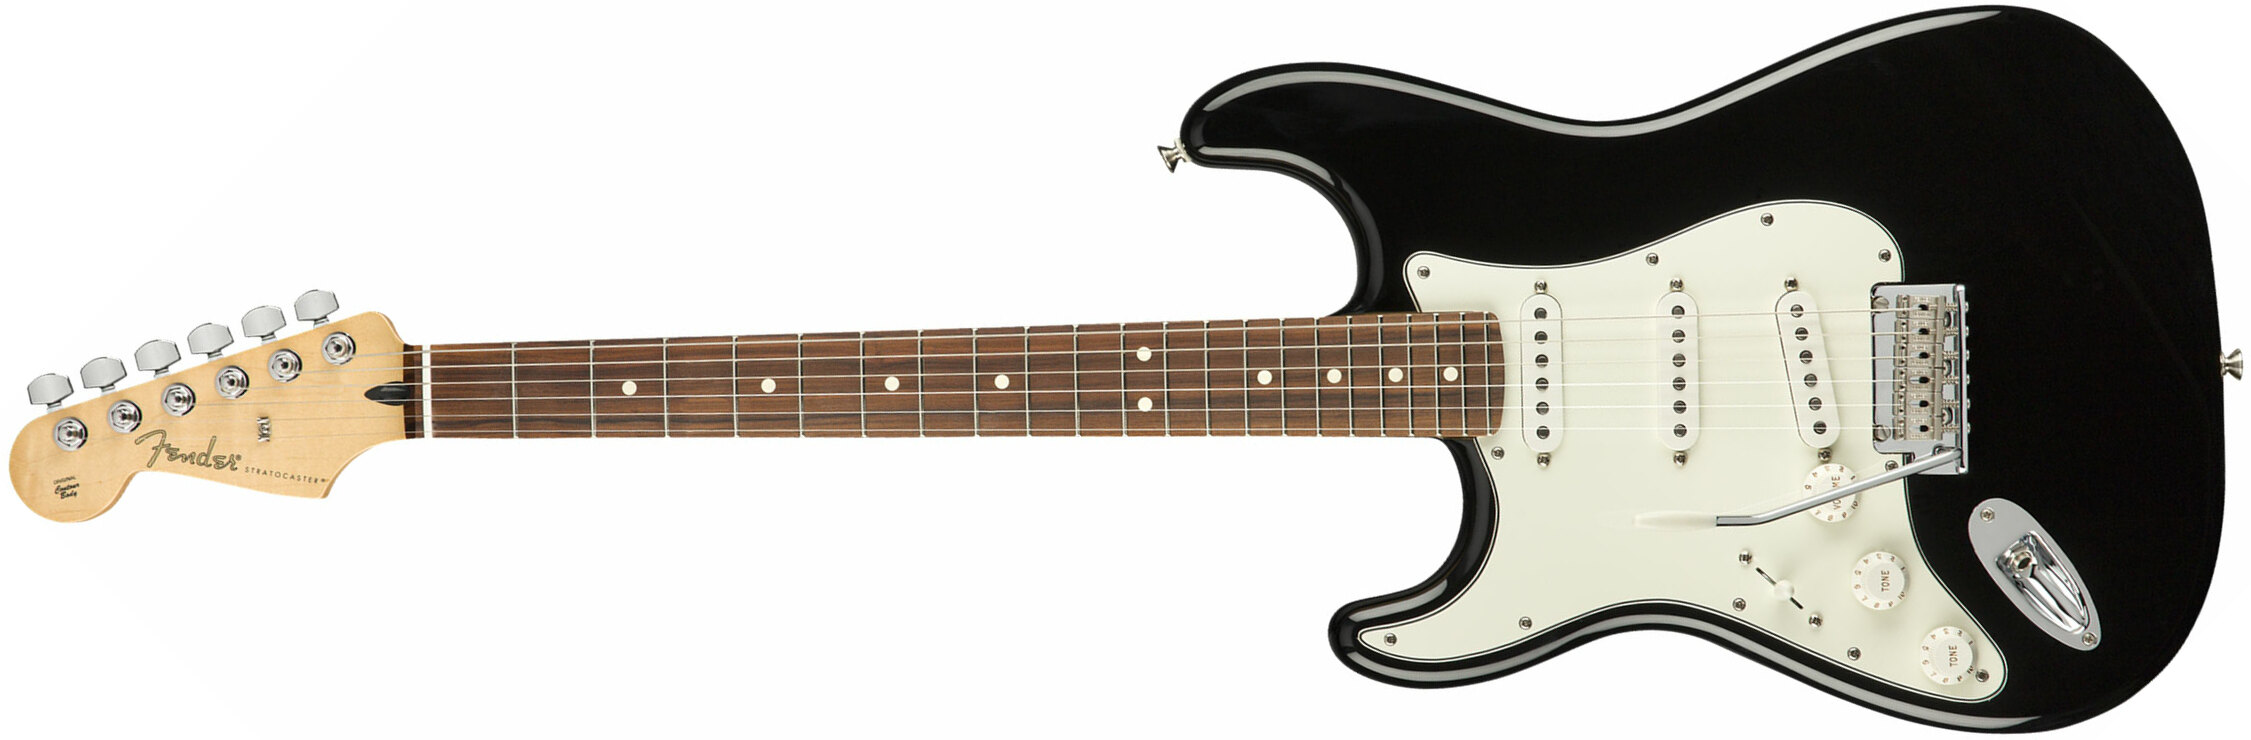 Fender Strat Player Lh Gaucher Mex Sss Pf - Black - Guitarra electrica para zurdos - Main picture